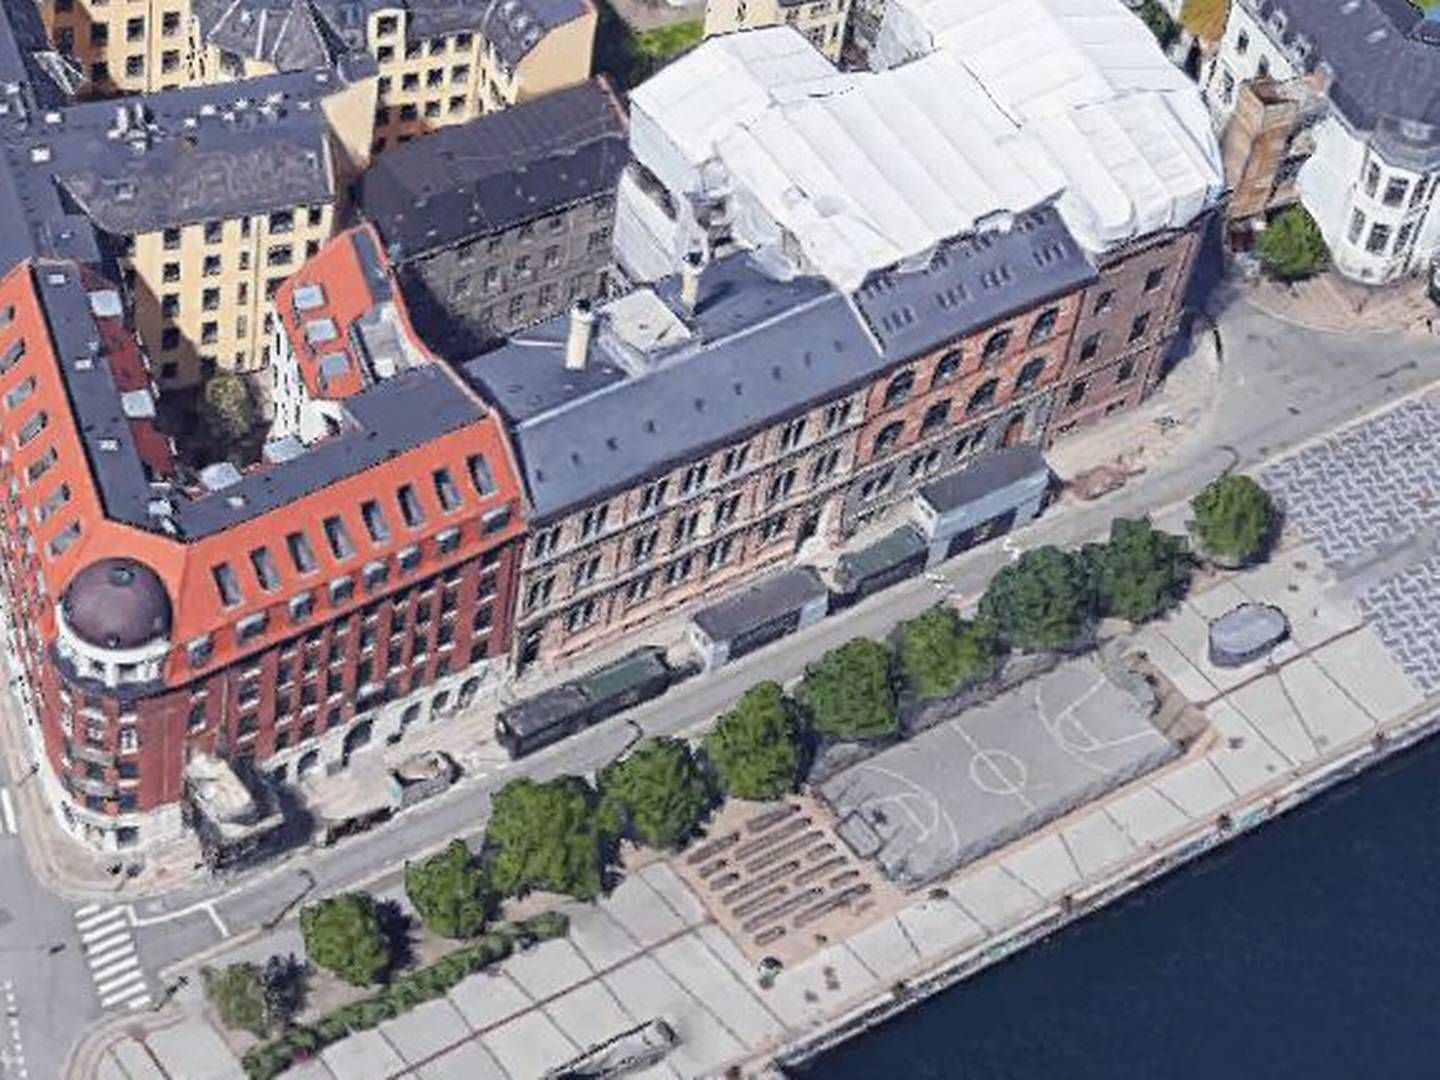 Keystone har gennem årene holdt til i Havnegade ud til Københavns Havn – først i nummer 39 og de seneste par år tættere på Knippelsbro i nummer 25. | Foto: Google Maps